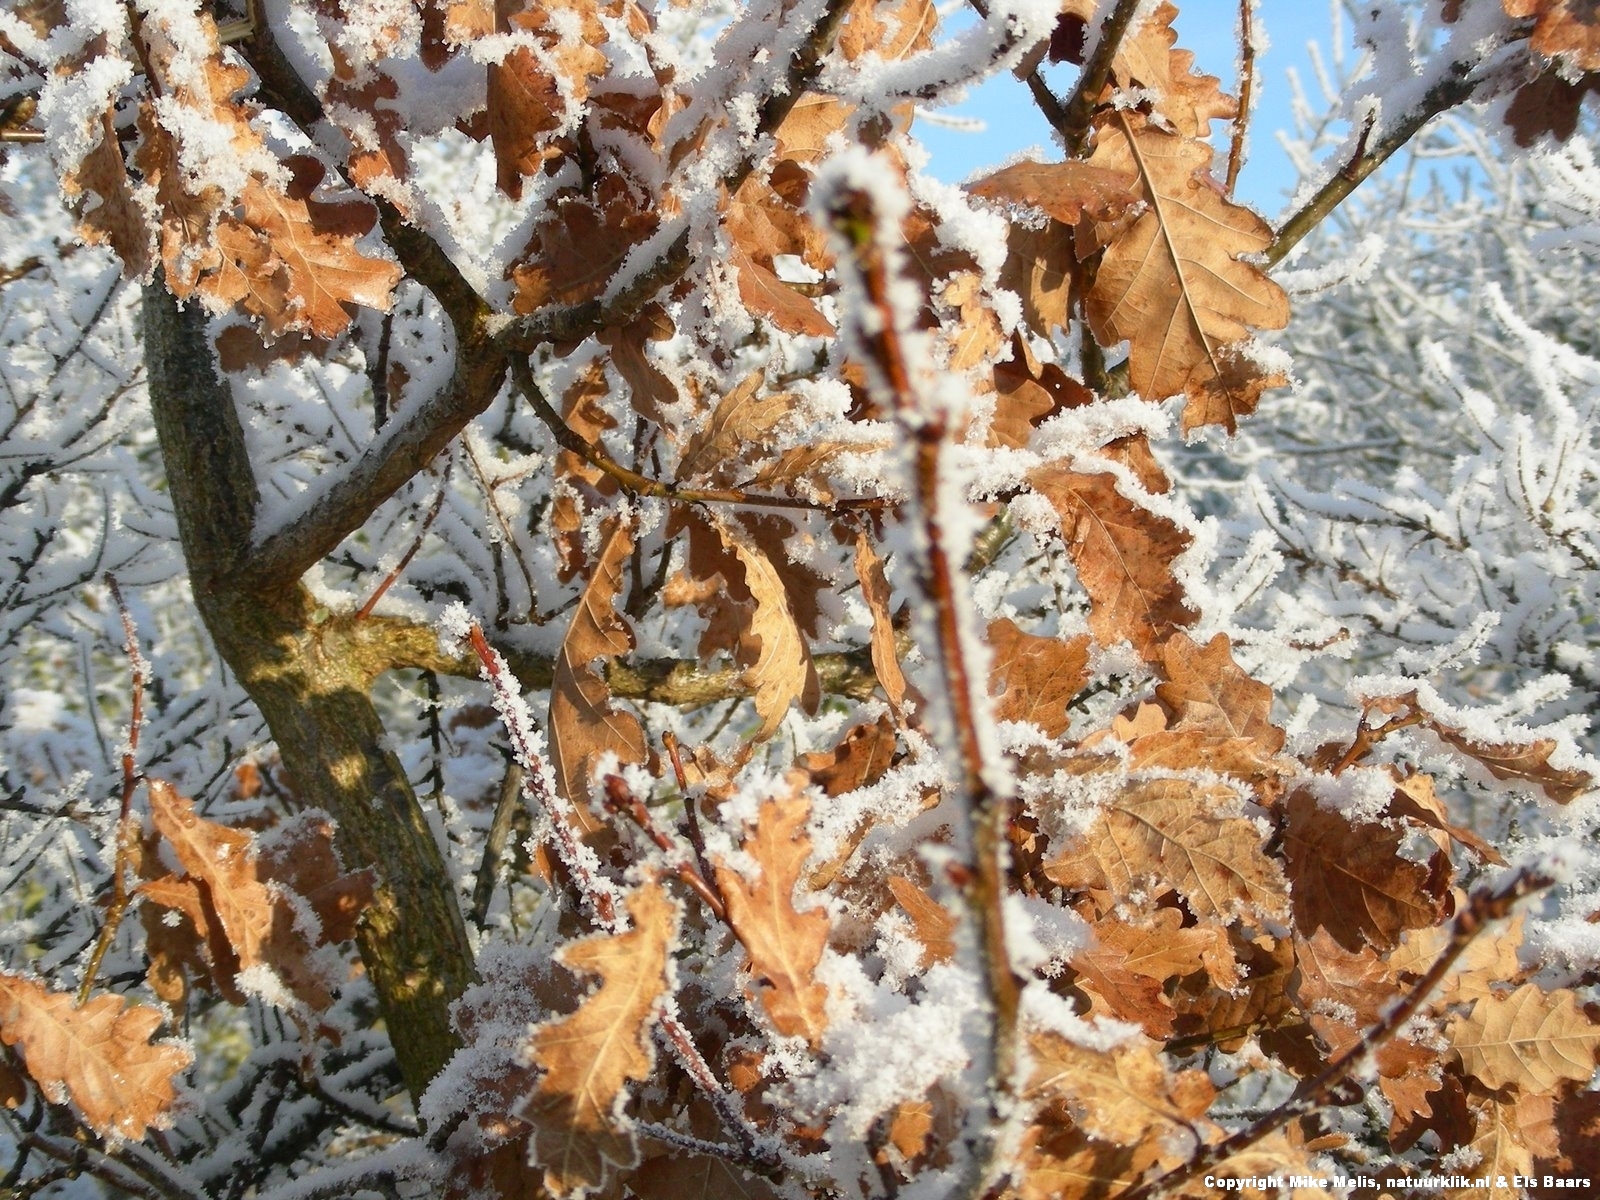 Betasten Hectare gebonden Waarom de EIK in de winter zijn blad vasthoudt (005) – Natuurverhalen